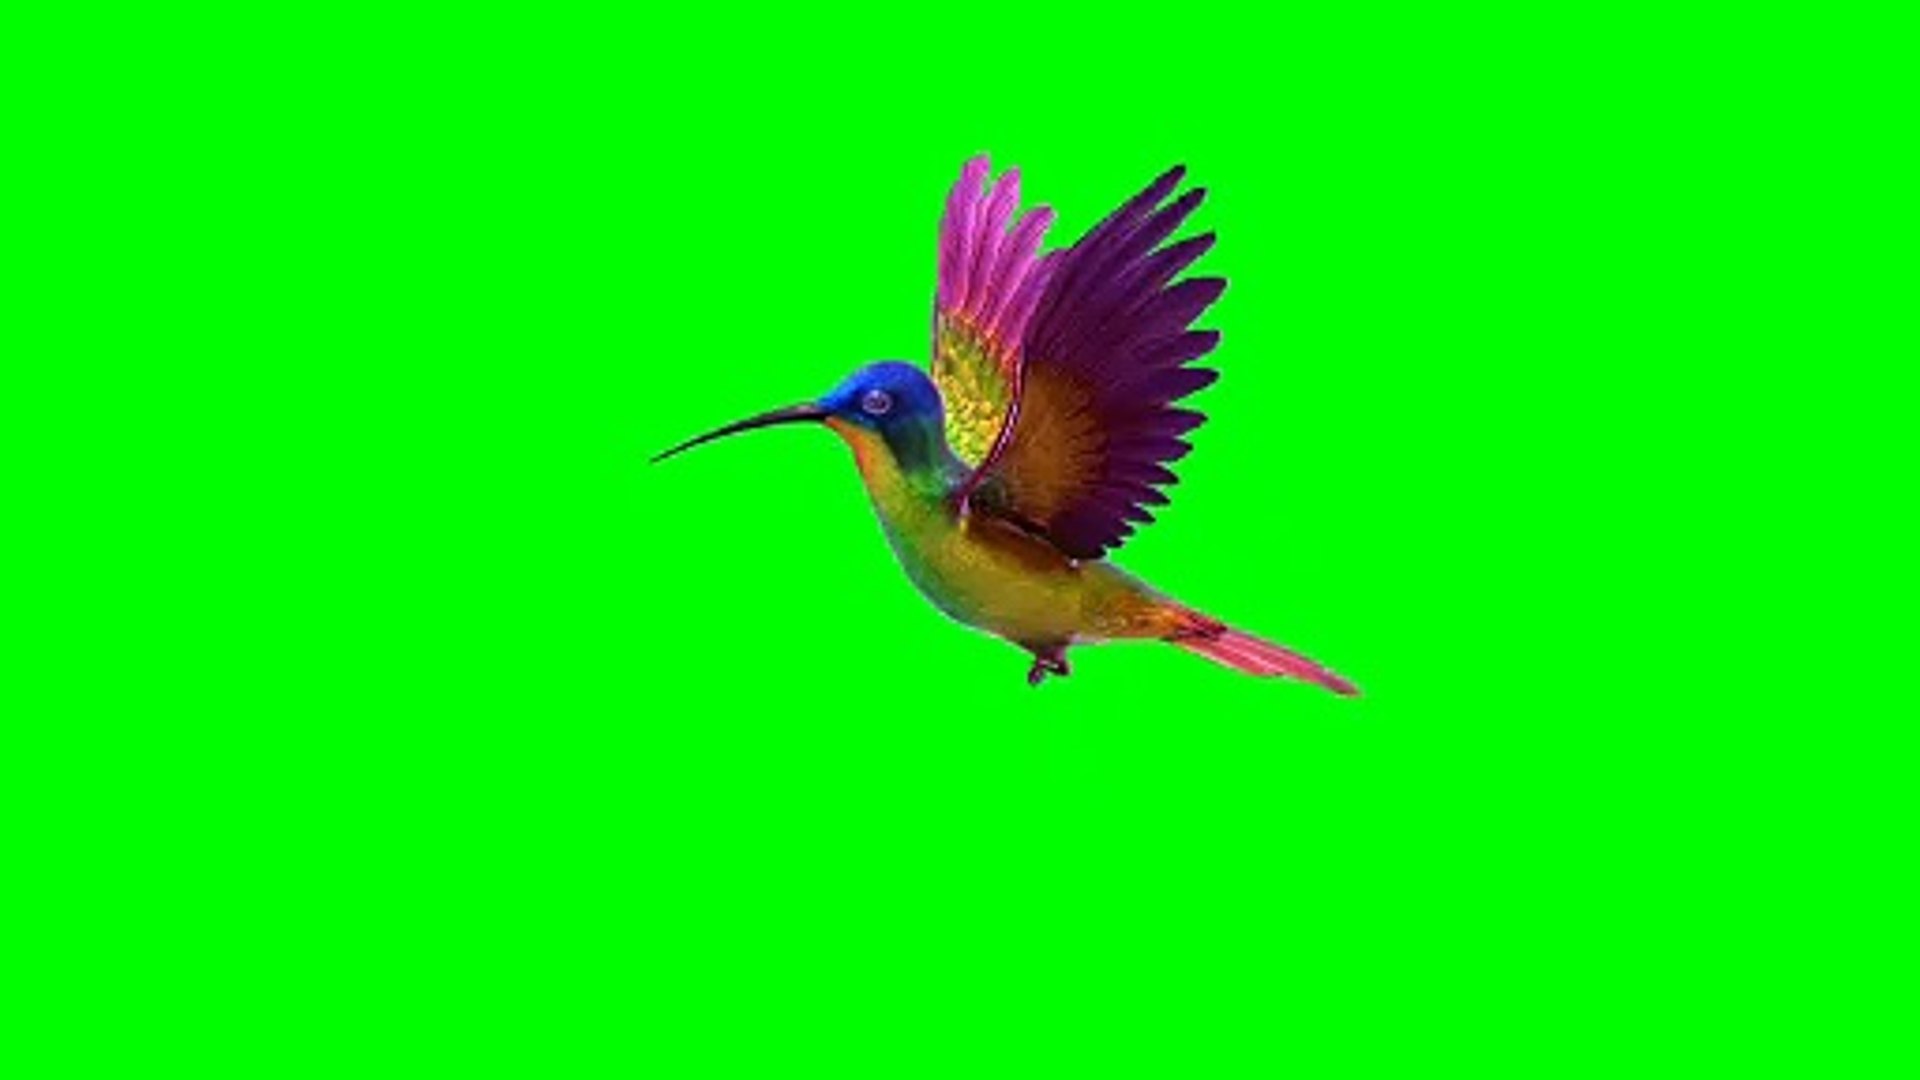 Chim ruồi màn hình xanh: Làm thế nào mà chim ruồi bay qua màn hình xanh lại thu hút người xem đến như vậy? Hãy xem ngay video này để khám phá sự kì diệu của hiệu ứng màn hình xanh và cách sử dụng nó để tạo ra các bộ phim và video chuyên nghiệp hơn. Bạn sẽ không thể rời mắt khỏi những đường bay uốn lượn của chim ruồi!